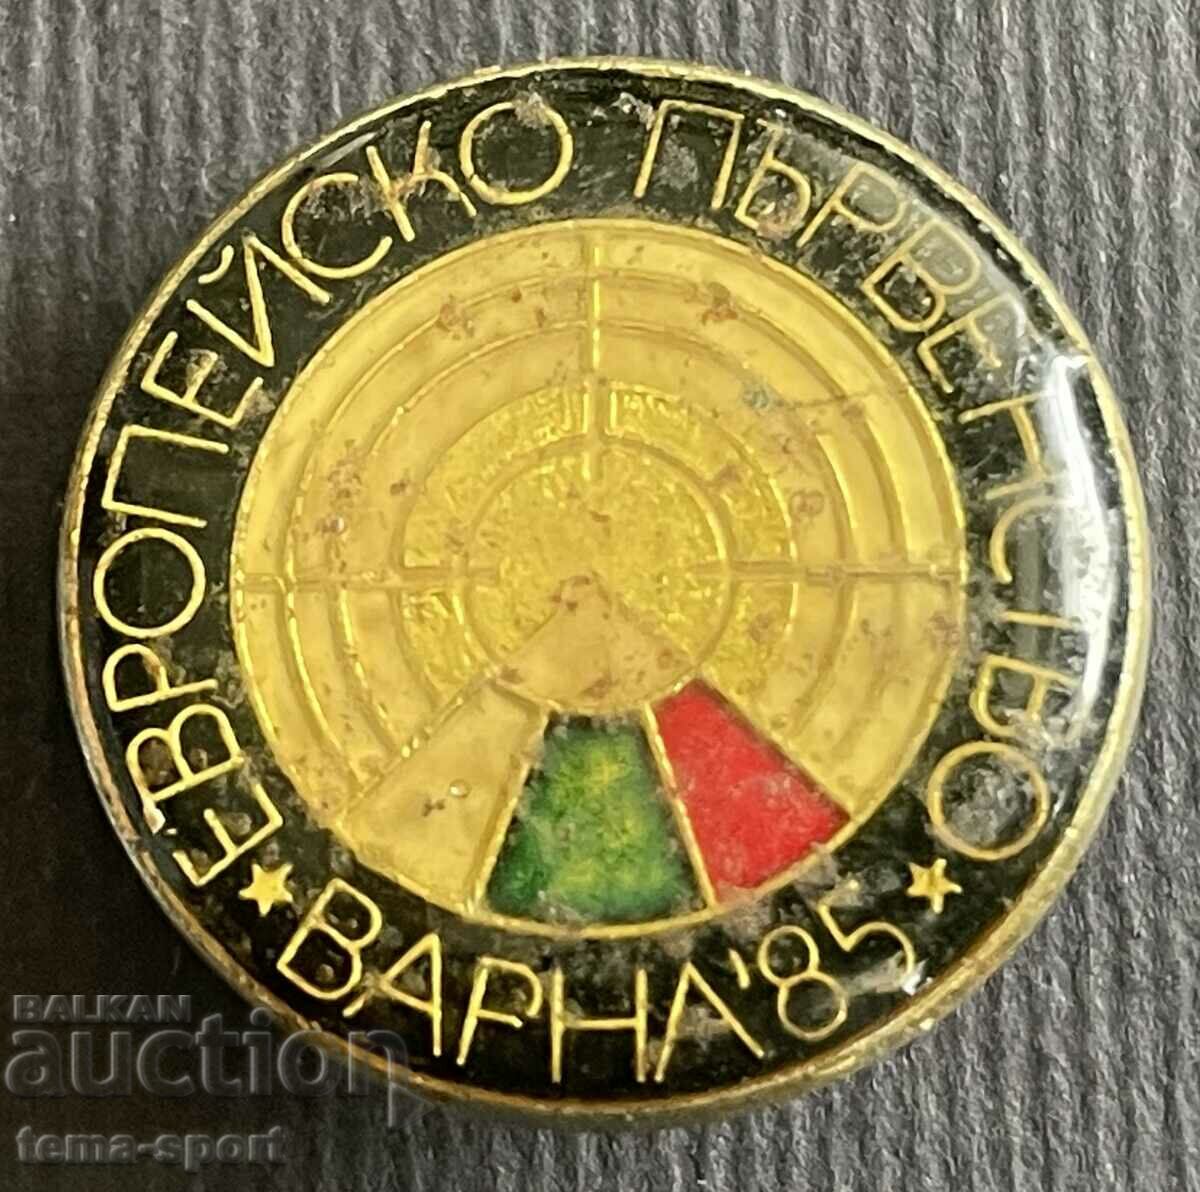 Σήμα 362 Βουλγαρίας Ευρωπαϊκό Πρωτάθλημα Σκοποβολής Βάρνα 1985.